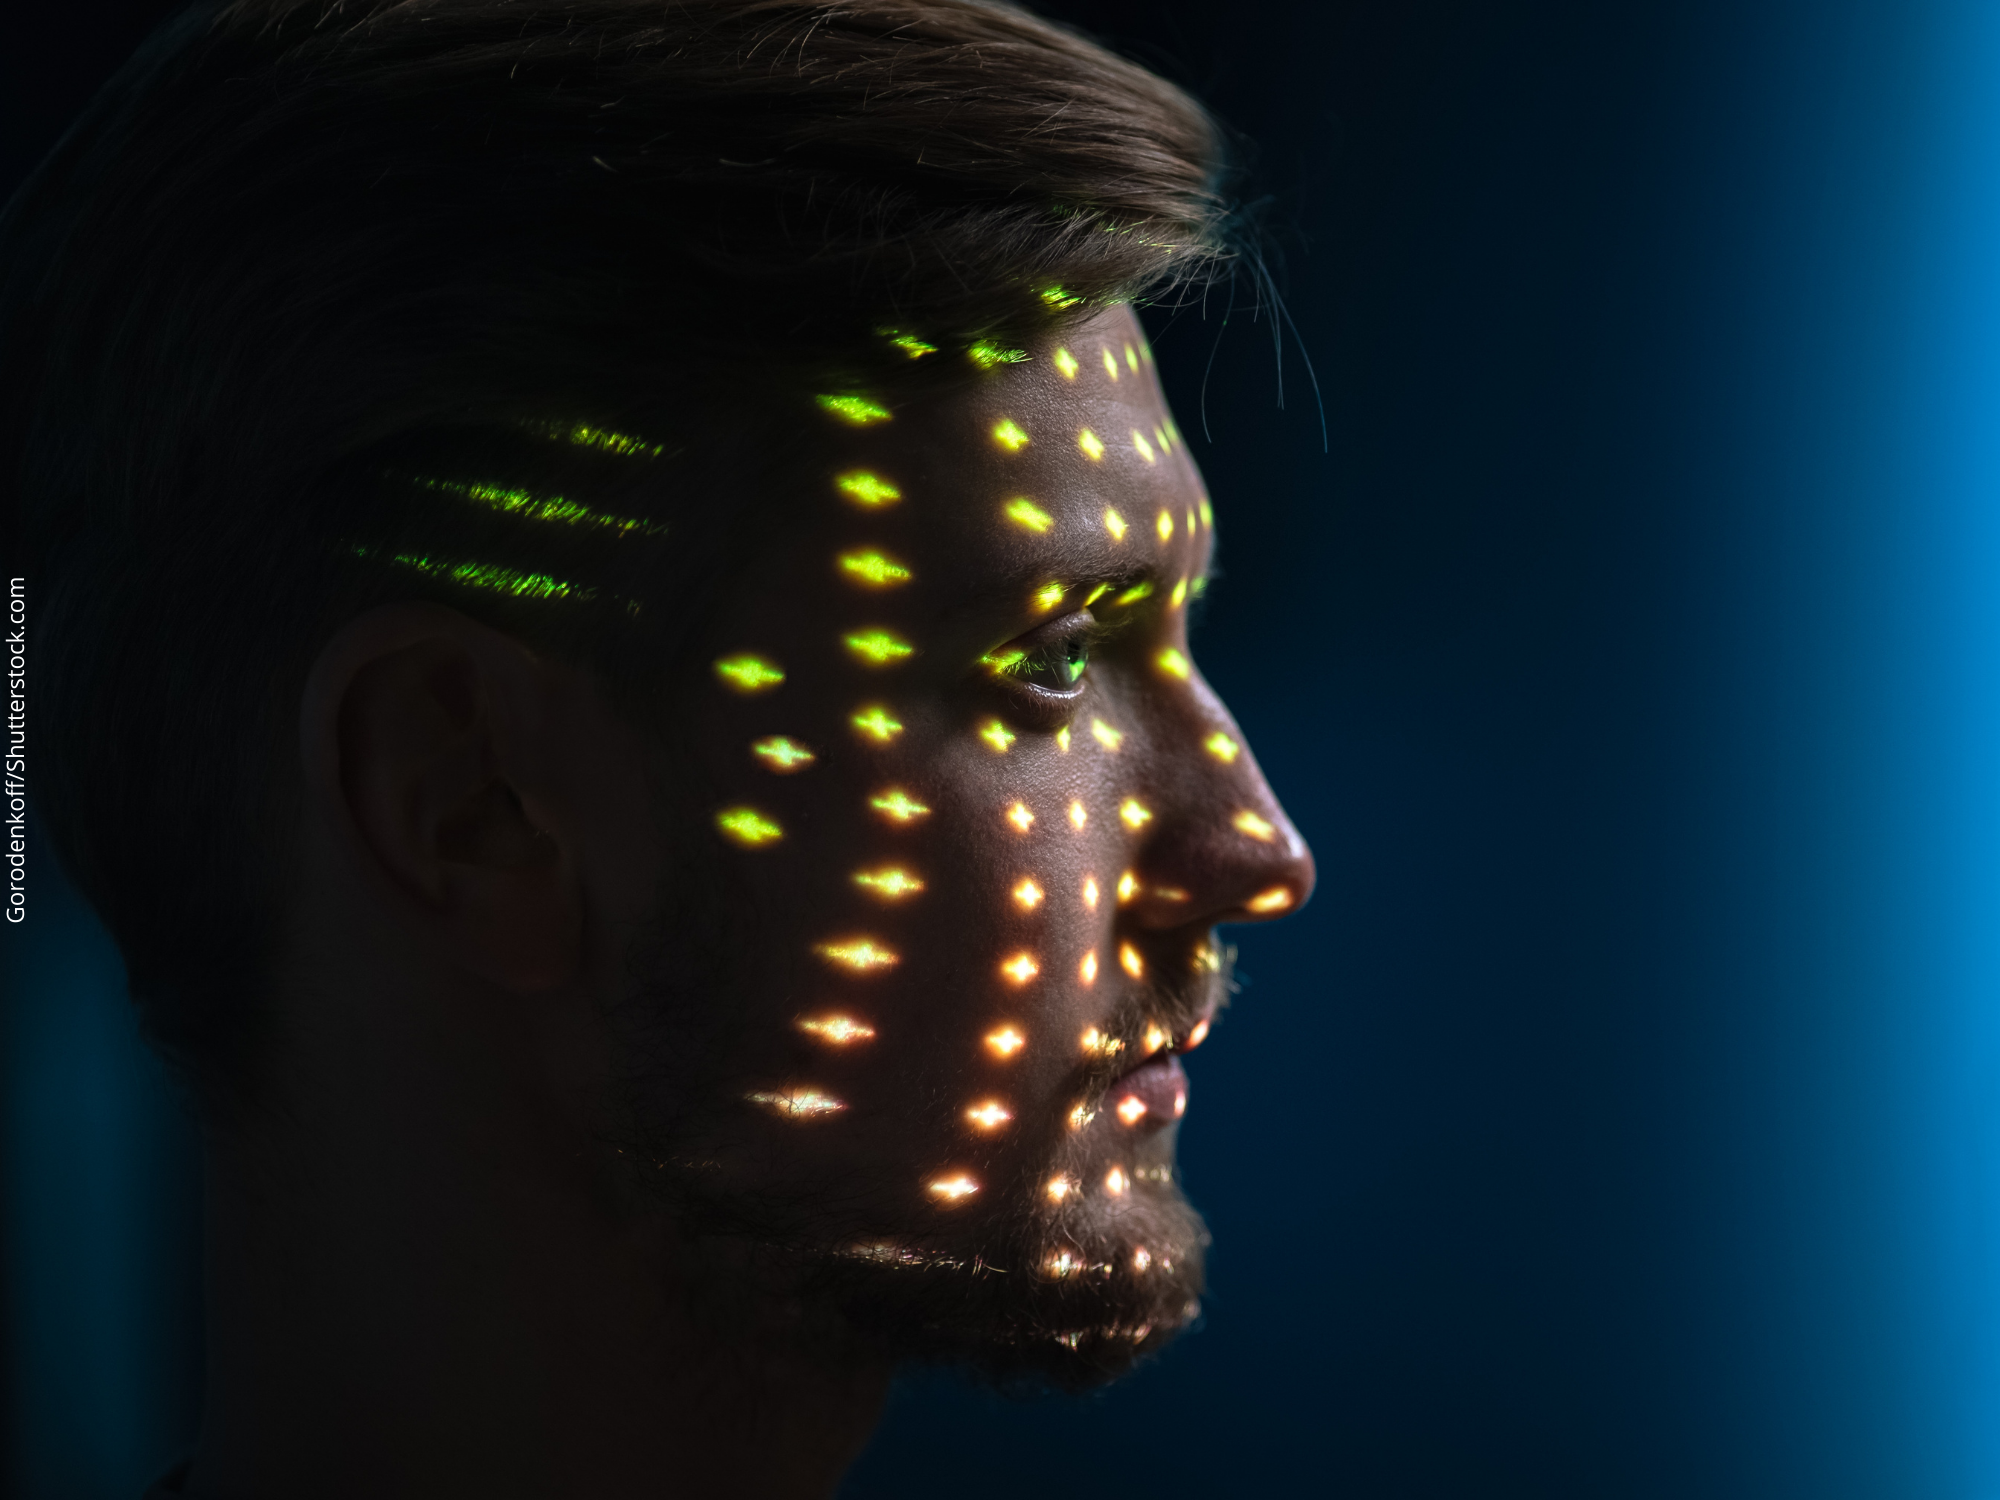 Nova escala de tons de pele melhora eficiência e inclusão em sistemas de inteligência artificial para detecção facial